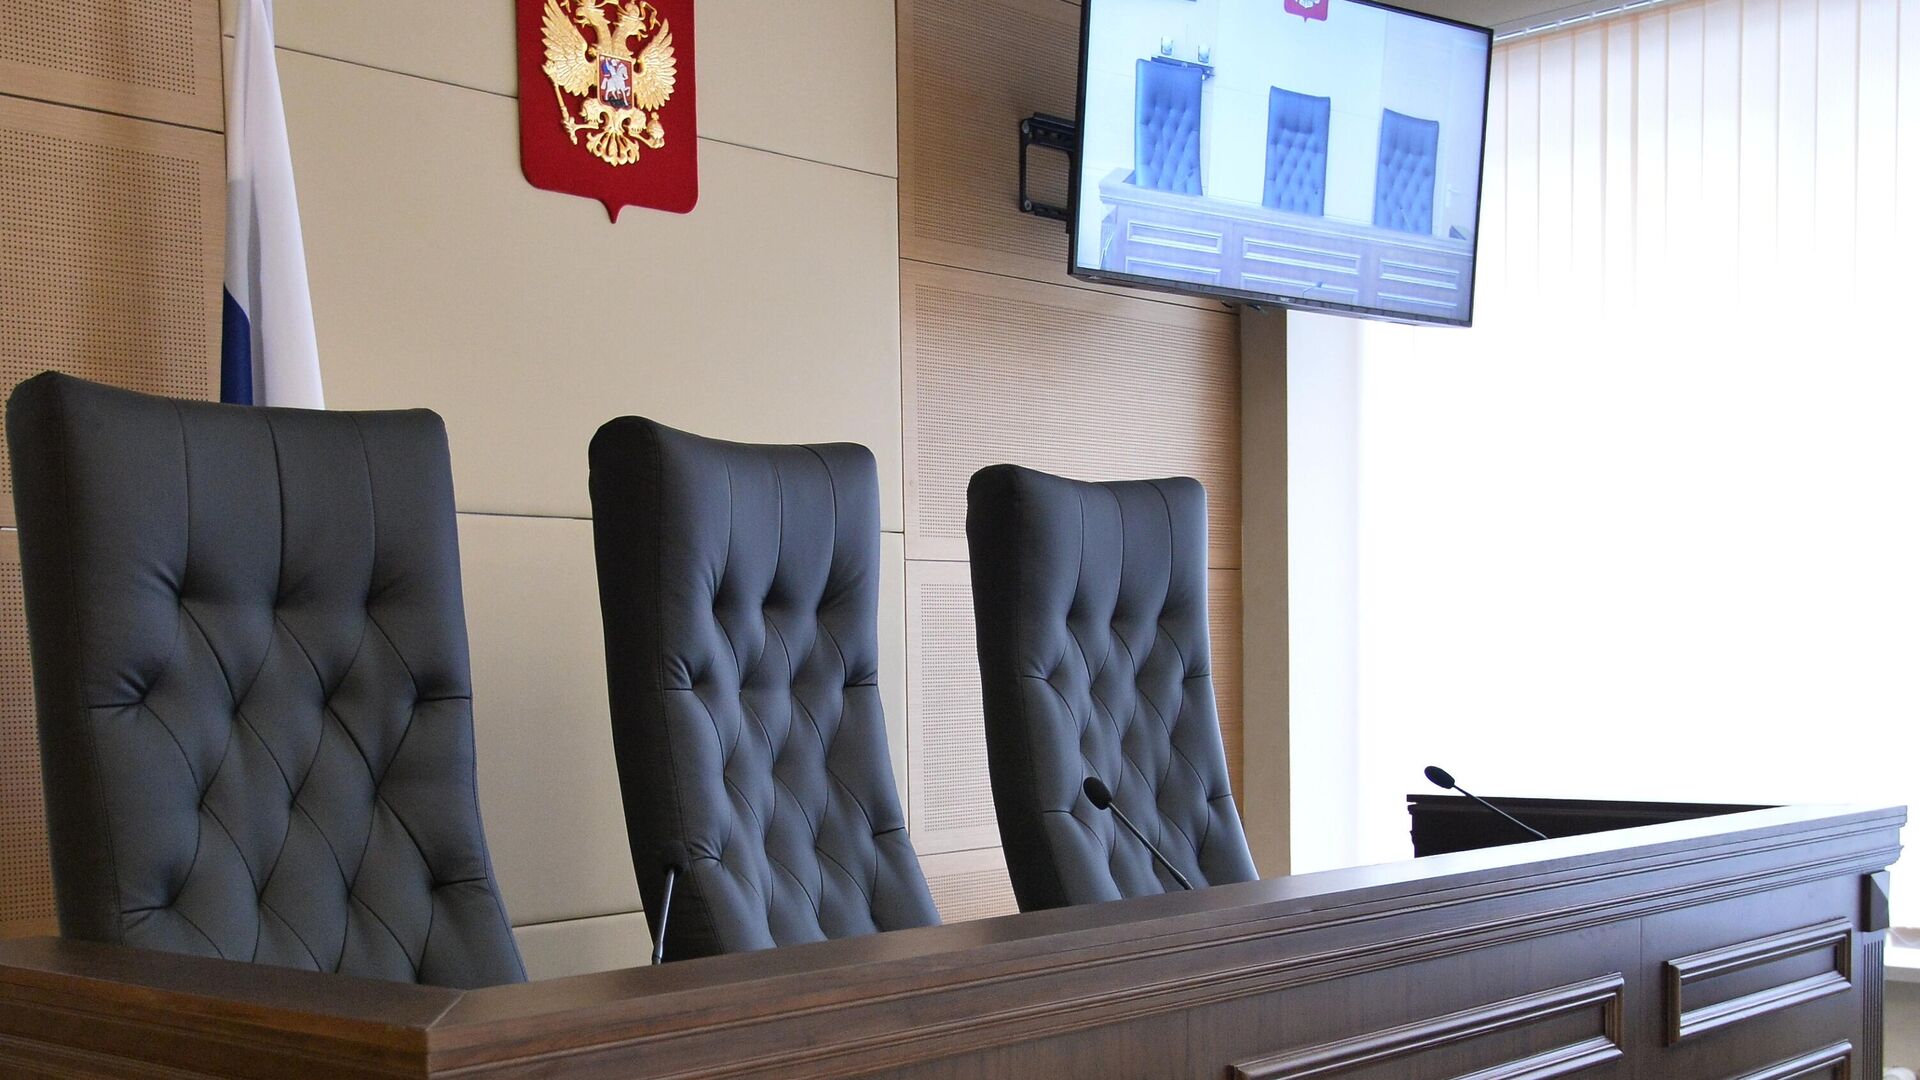 Кресла для судей в зале заседаний - РИА Новости, 1920, 01.06.2020